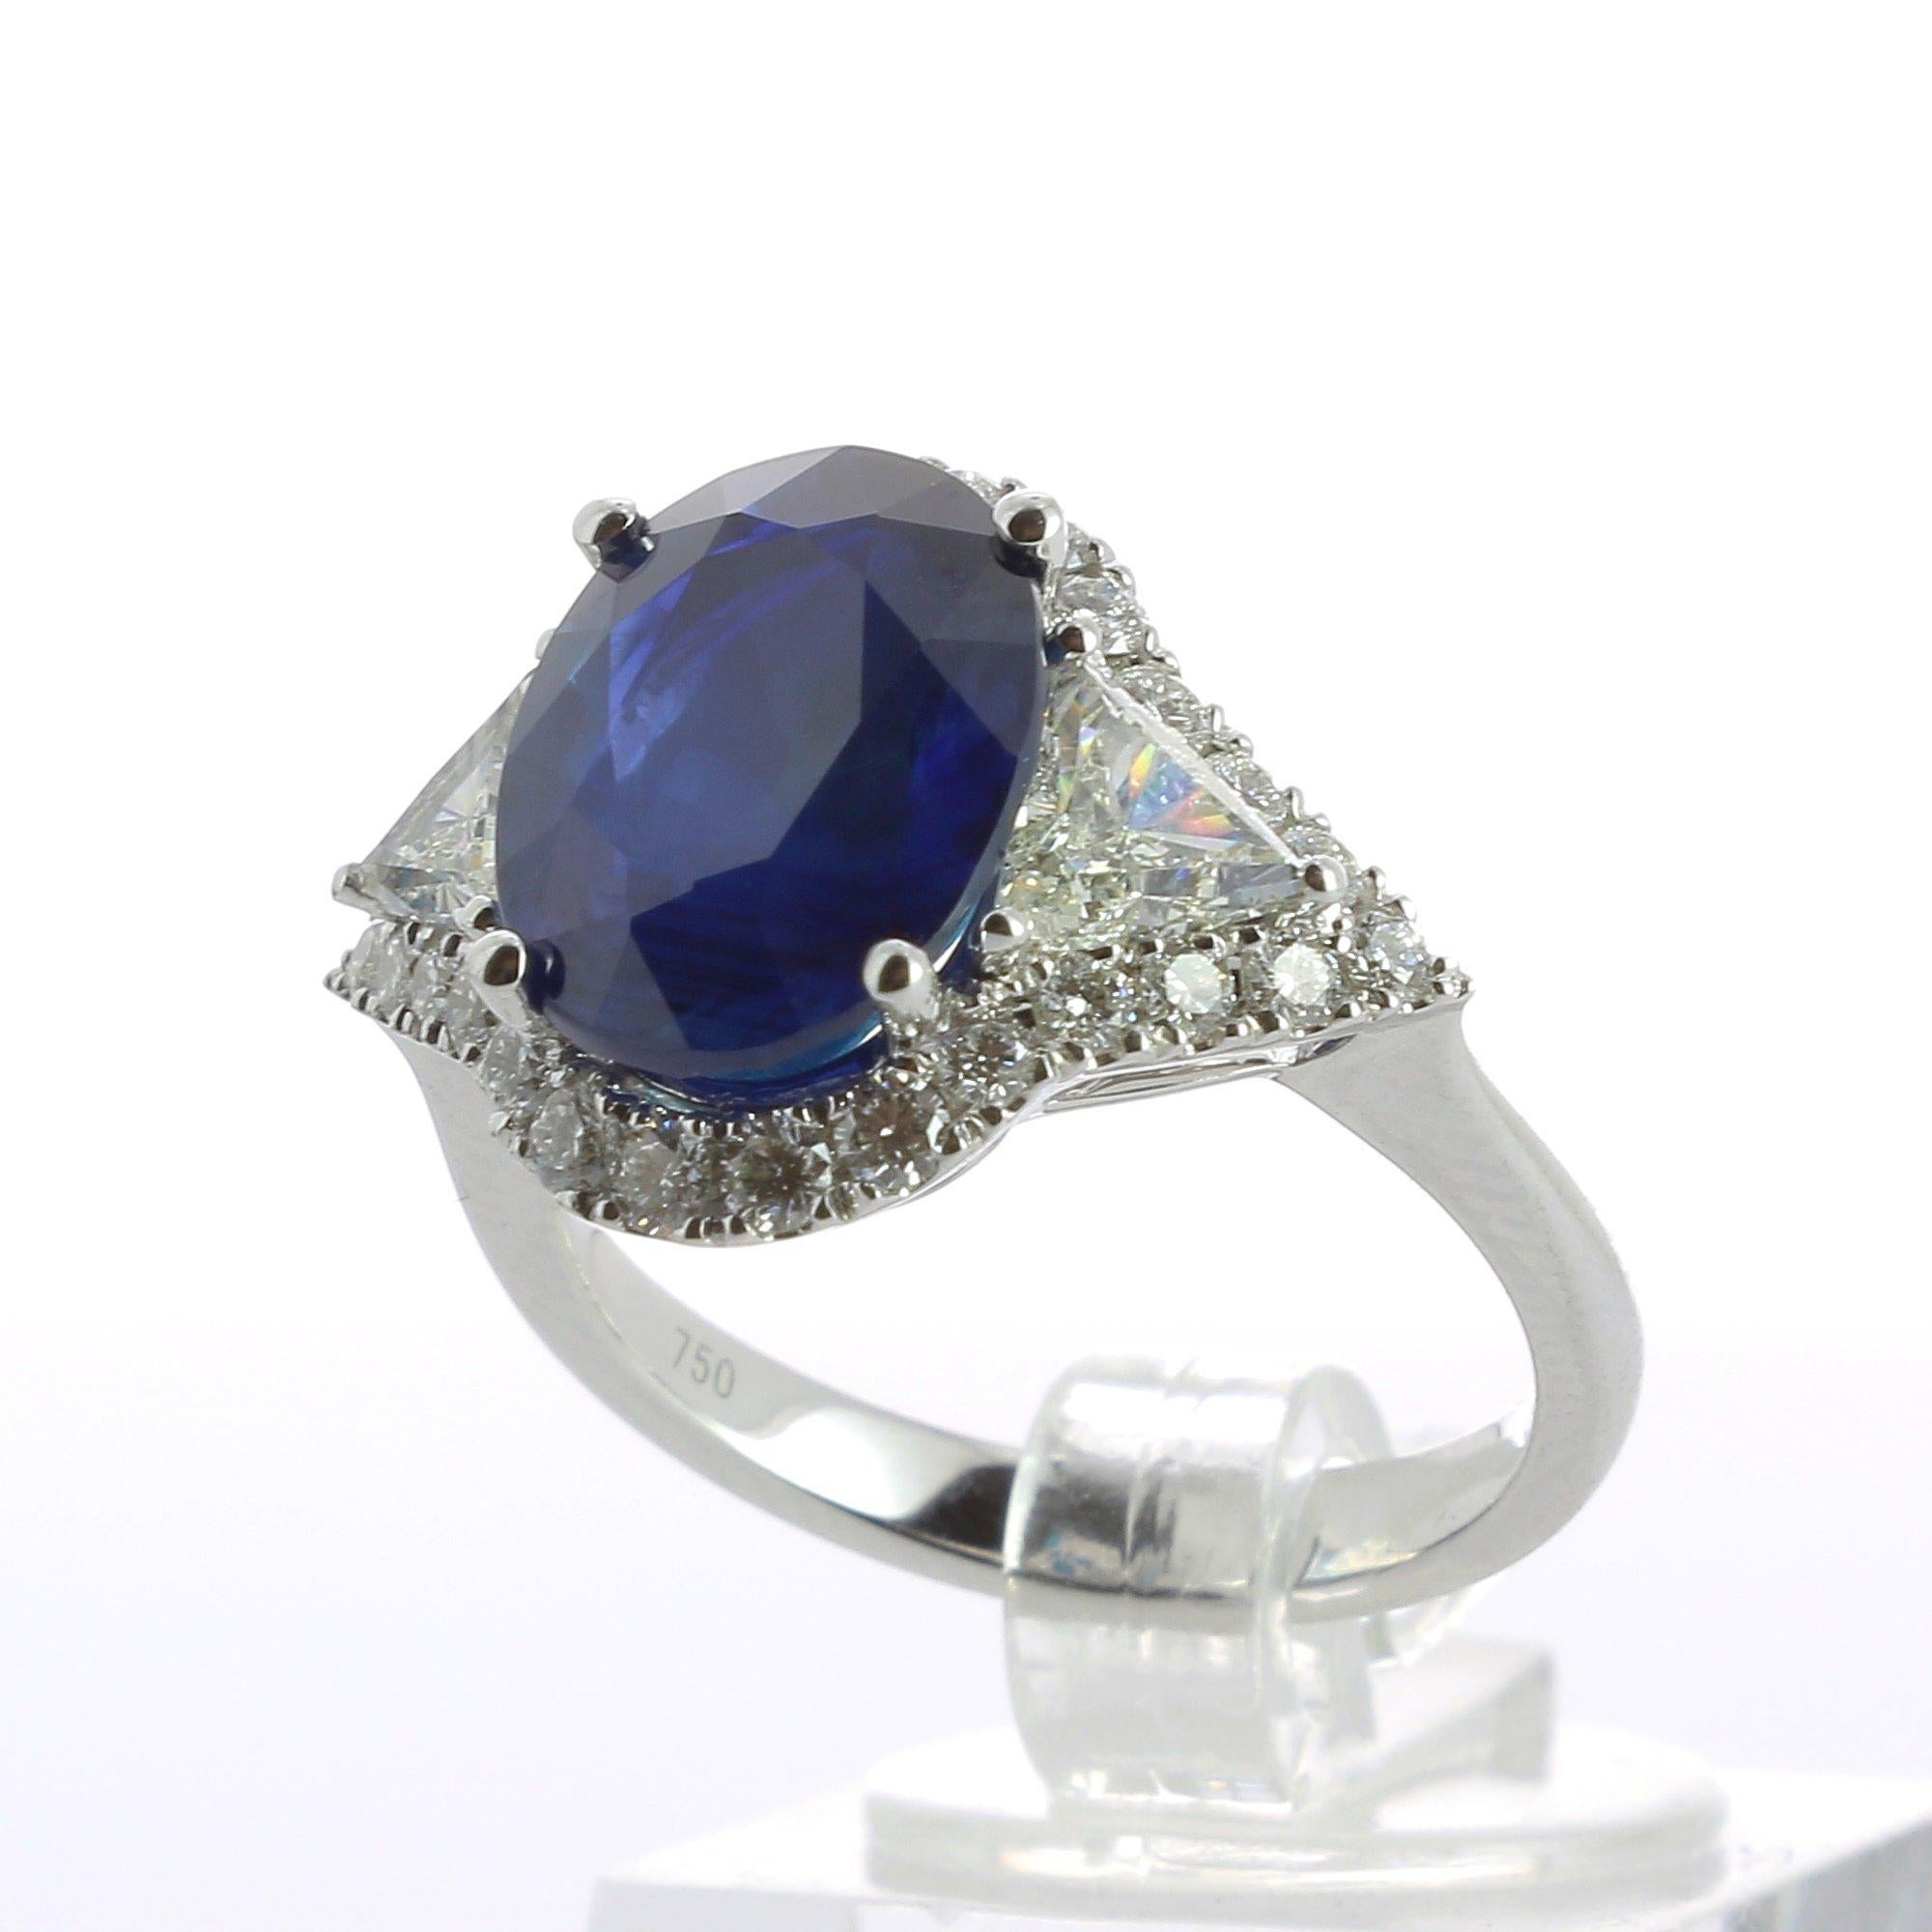 Amazing 5.29 Carat Oval Sapphire and Diamond Cocktail Ring 18 Karat White Gold für Damen oder Herren